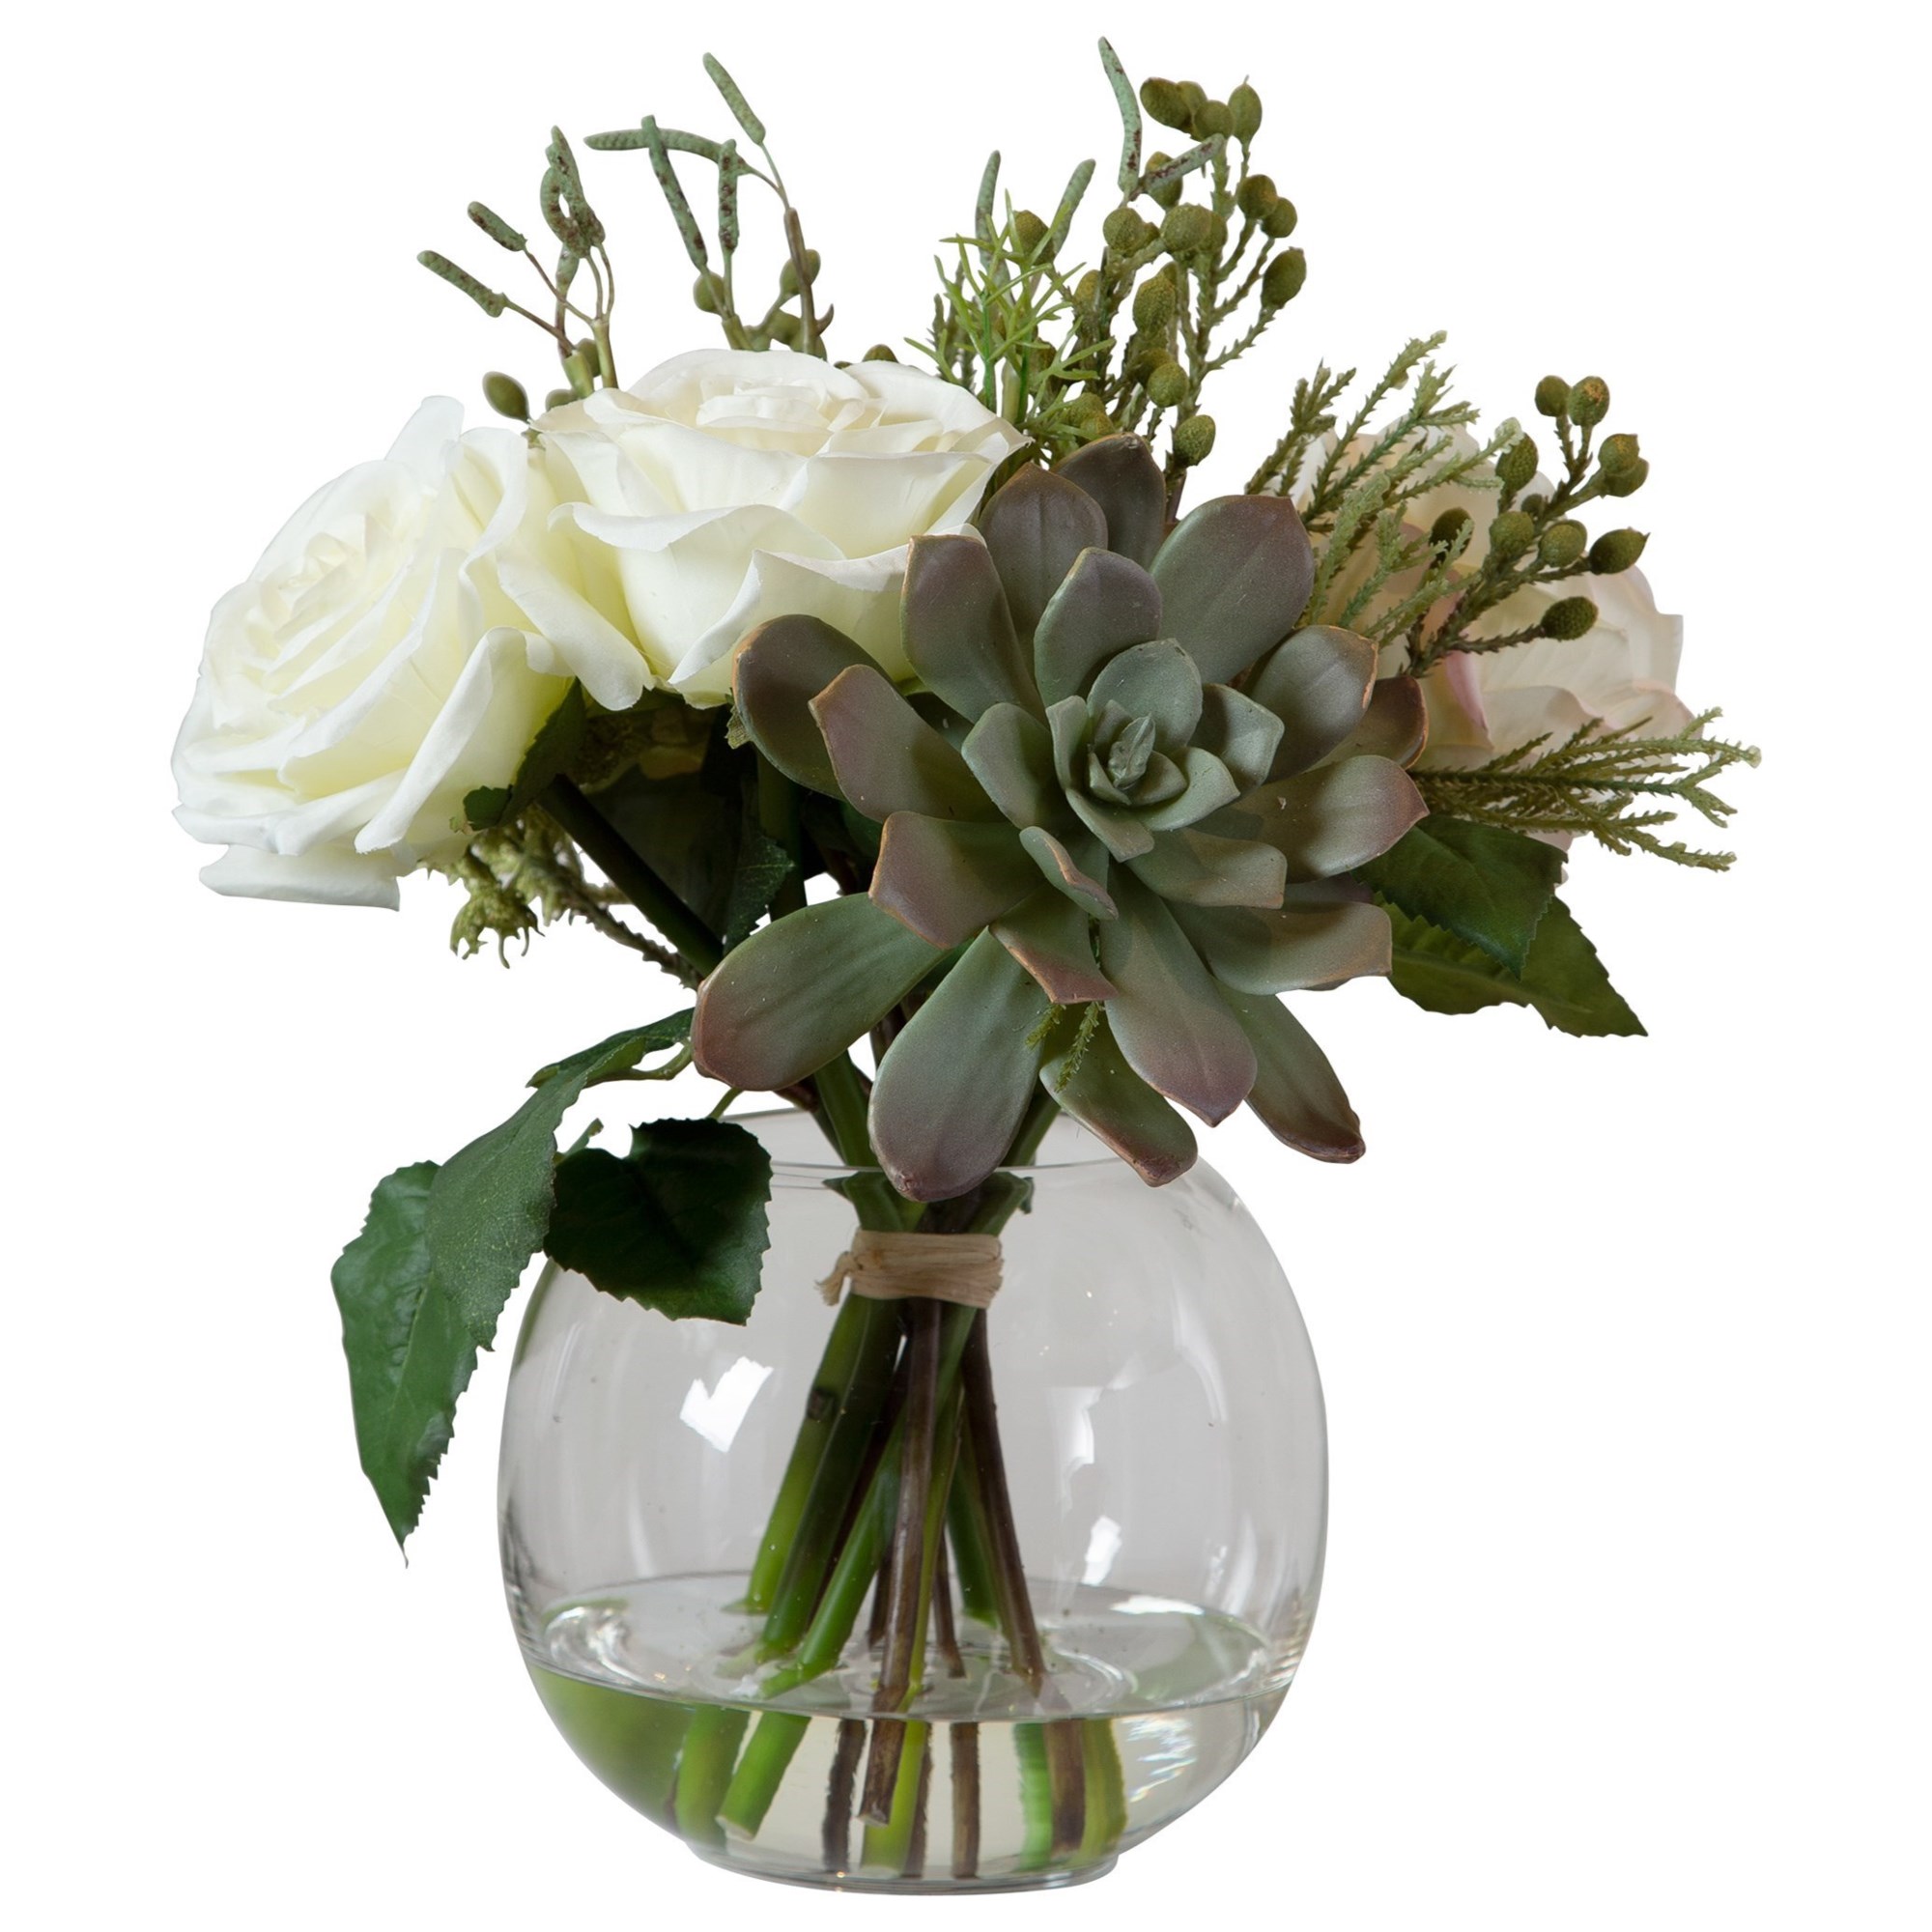 Uttermost Belmonte Floral Bouquet & Vase